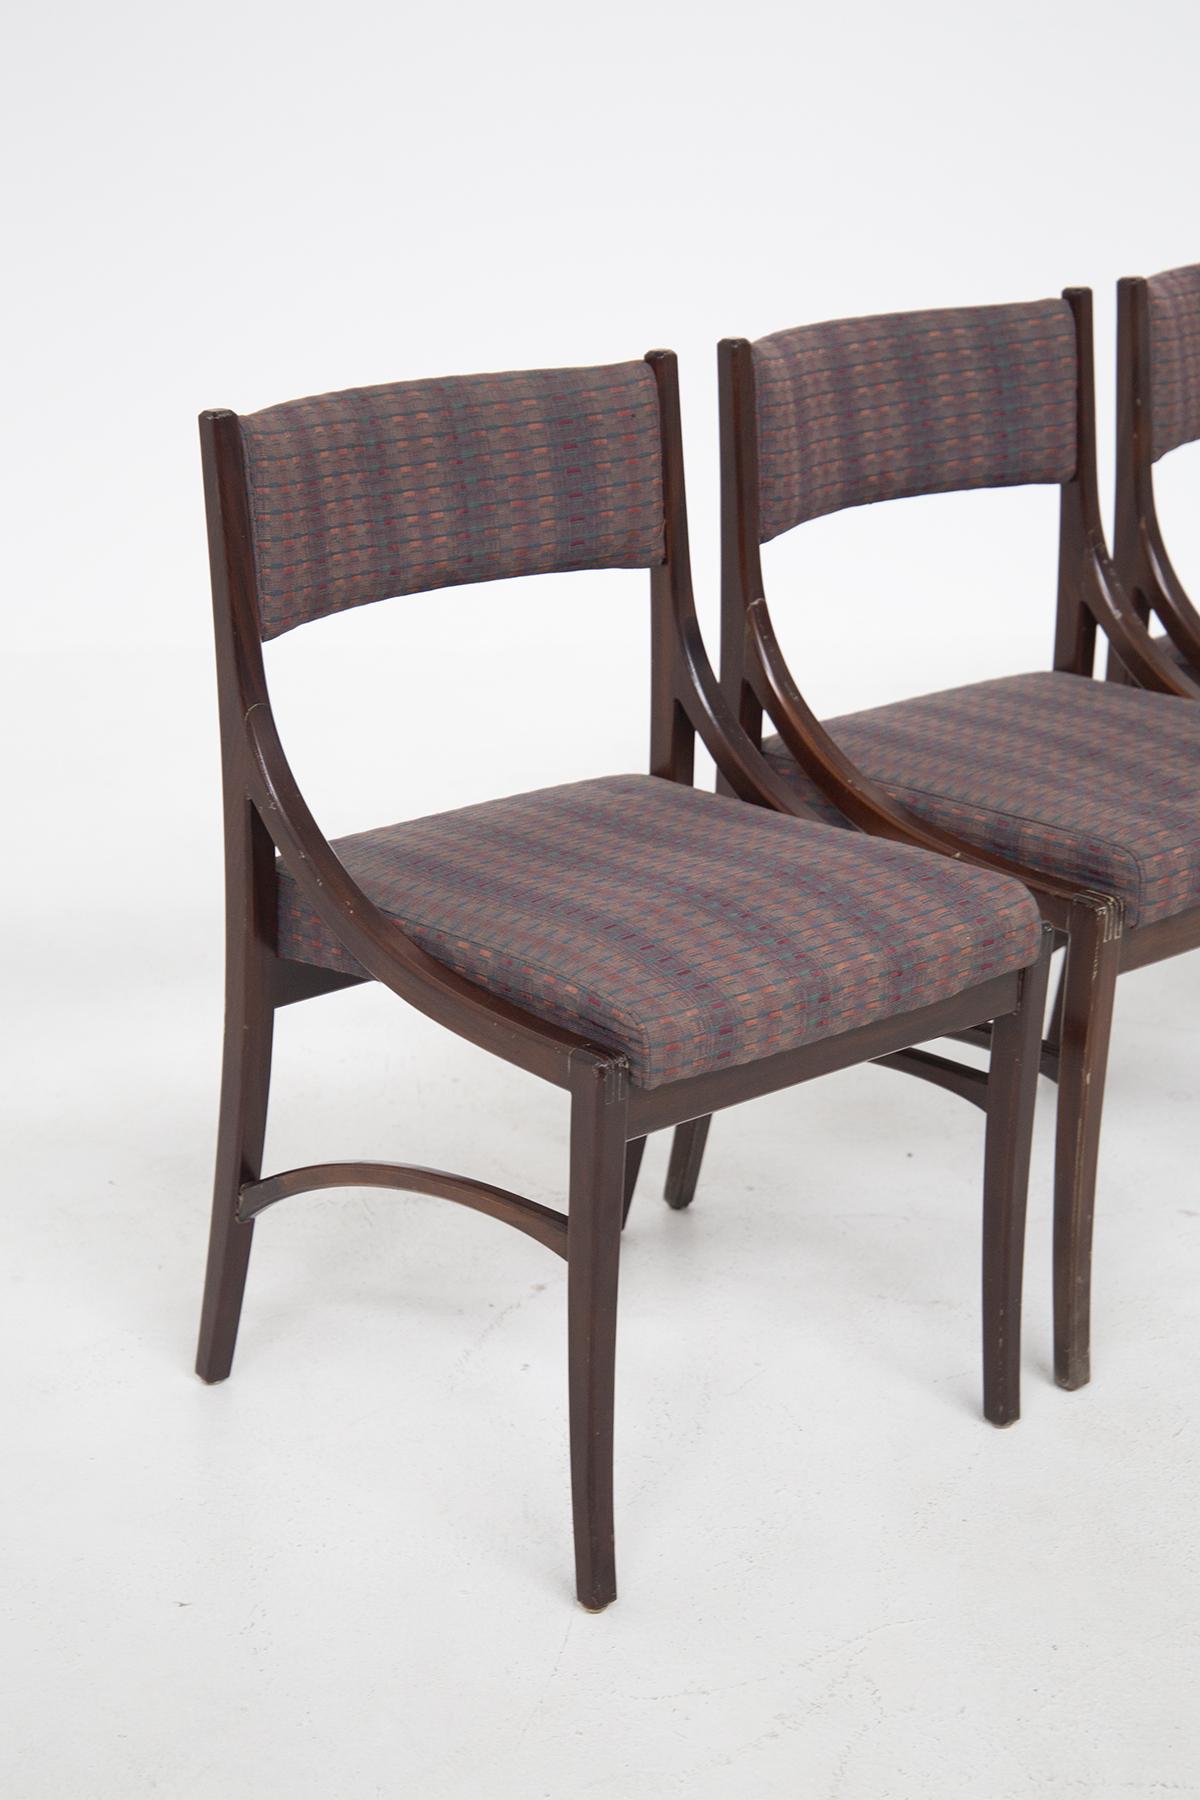 Set bestehend aus vier italienischen Vintage-Stühlen aus den 1970er Jahren. Die Stühle haben einen Rahmen aus dunklem Holz und umrahmen die Sitzfläche mit geschwungenen und weichen Formen. Die Sitzfläche und die Rückenlehne der italienischen